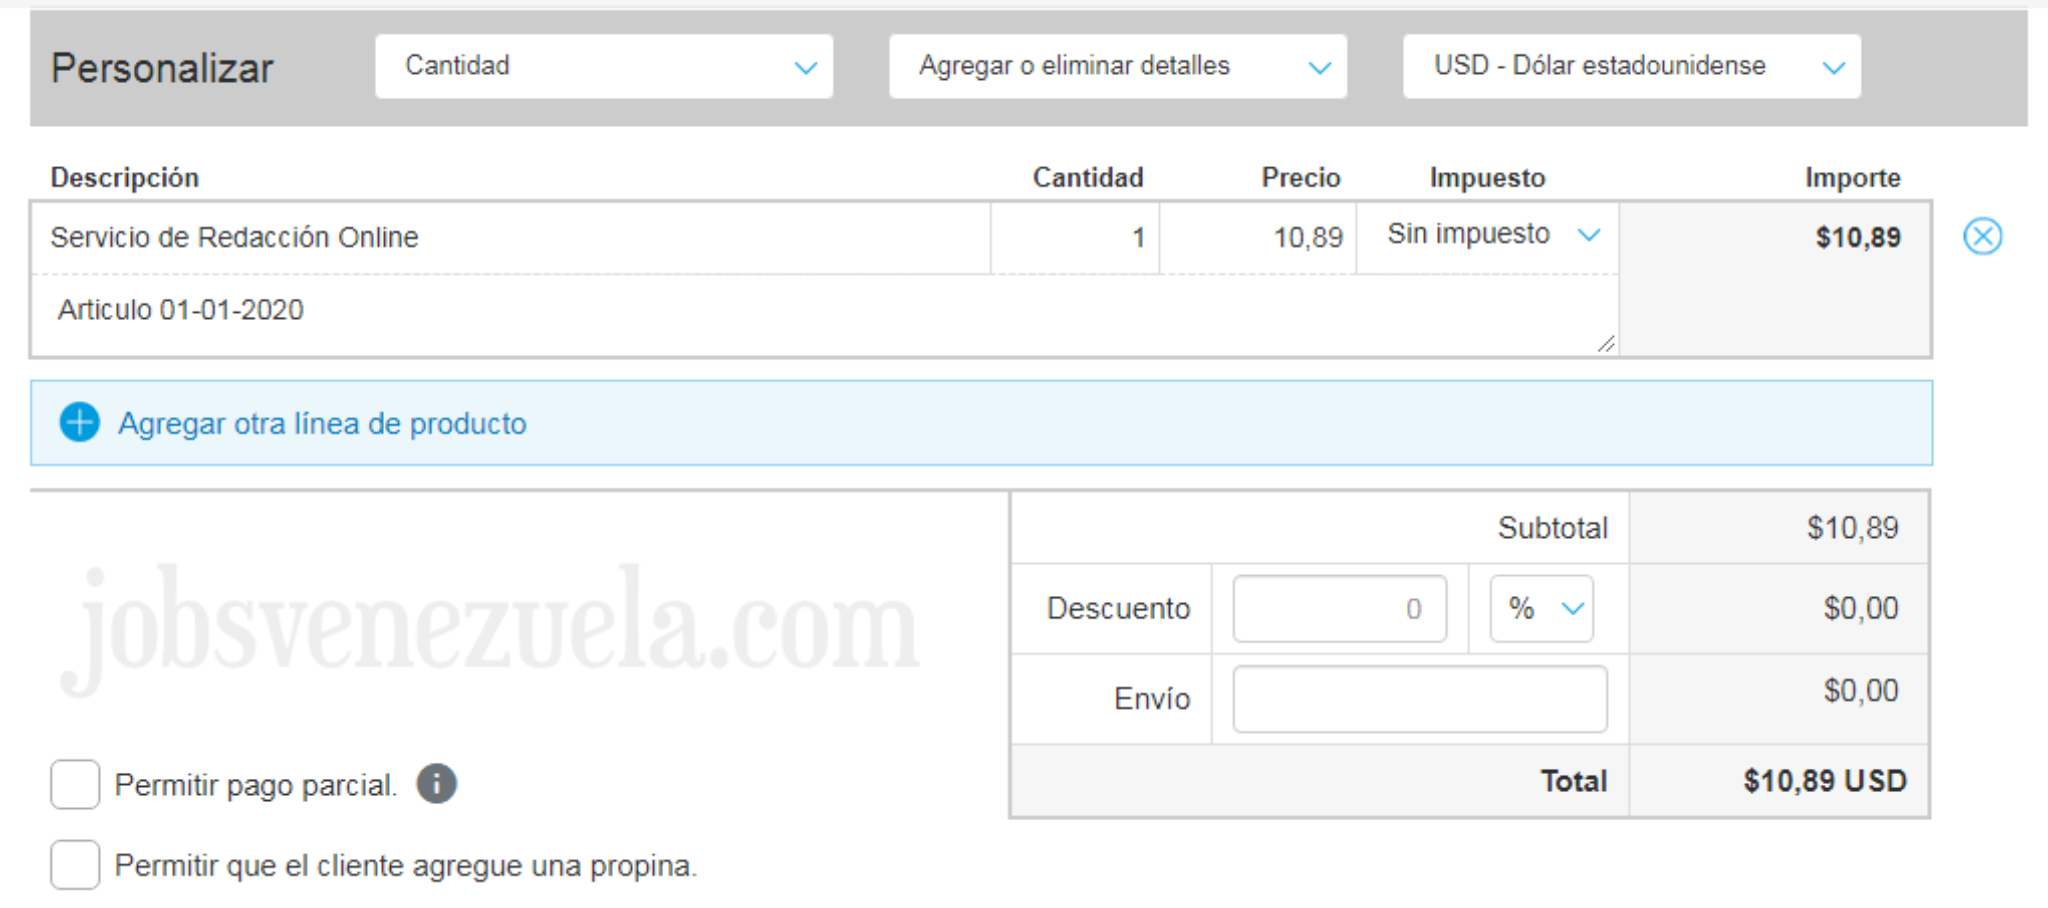 ¿Cómo hacer y enviar formatos de pago PayPal? - Jobs Venezuela